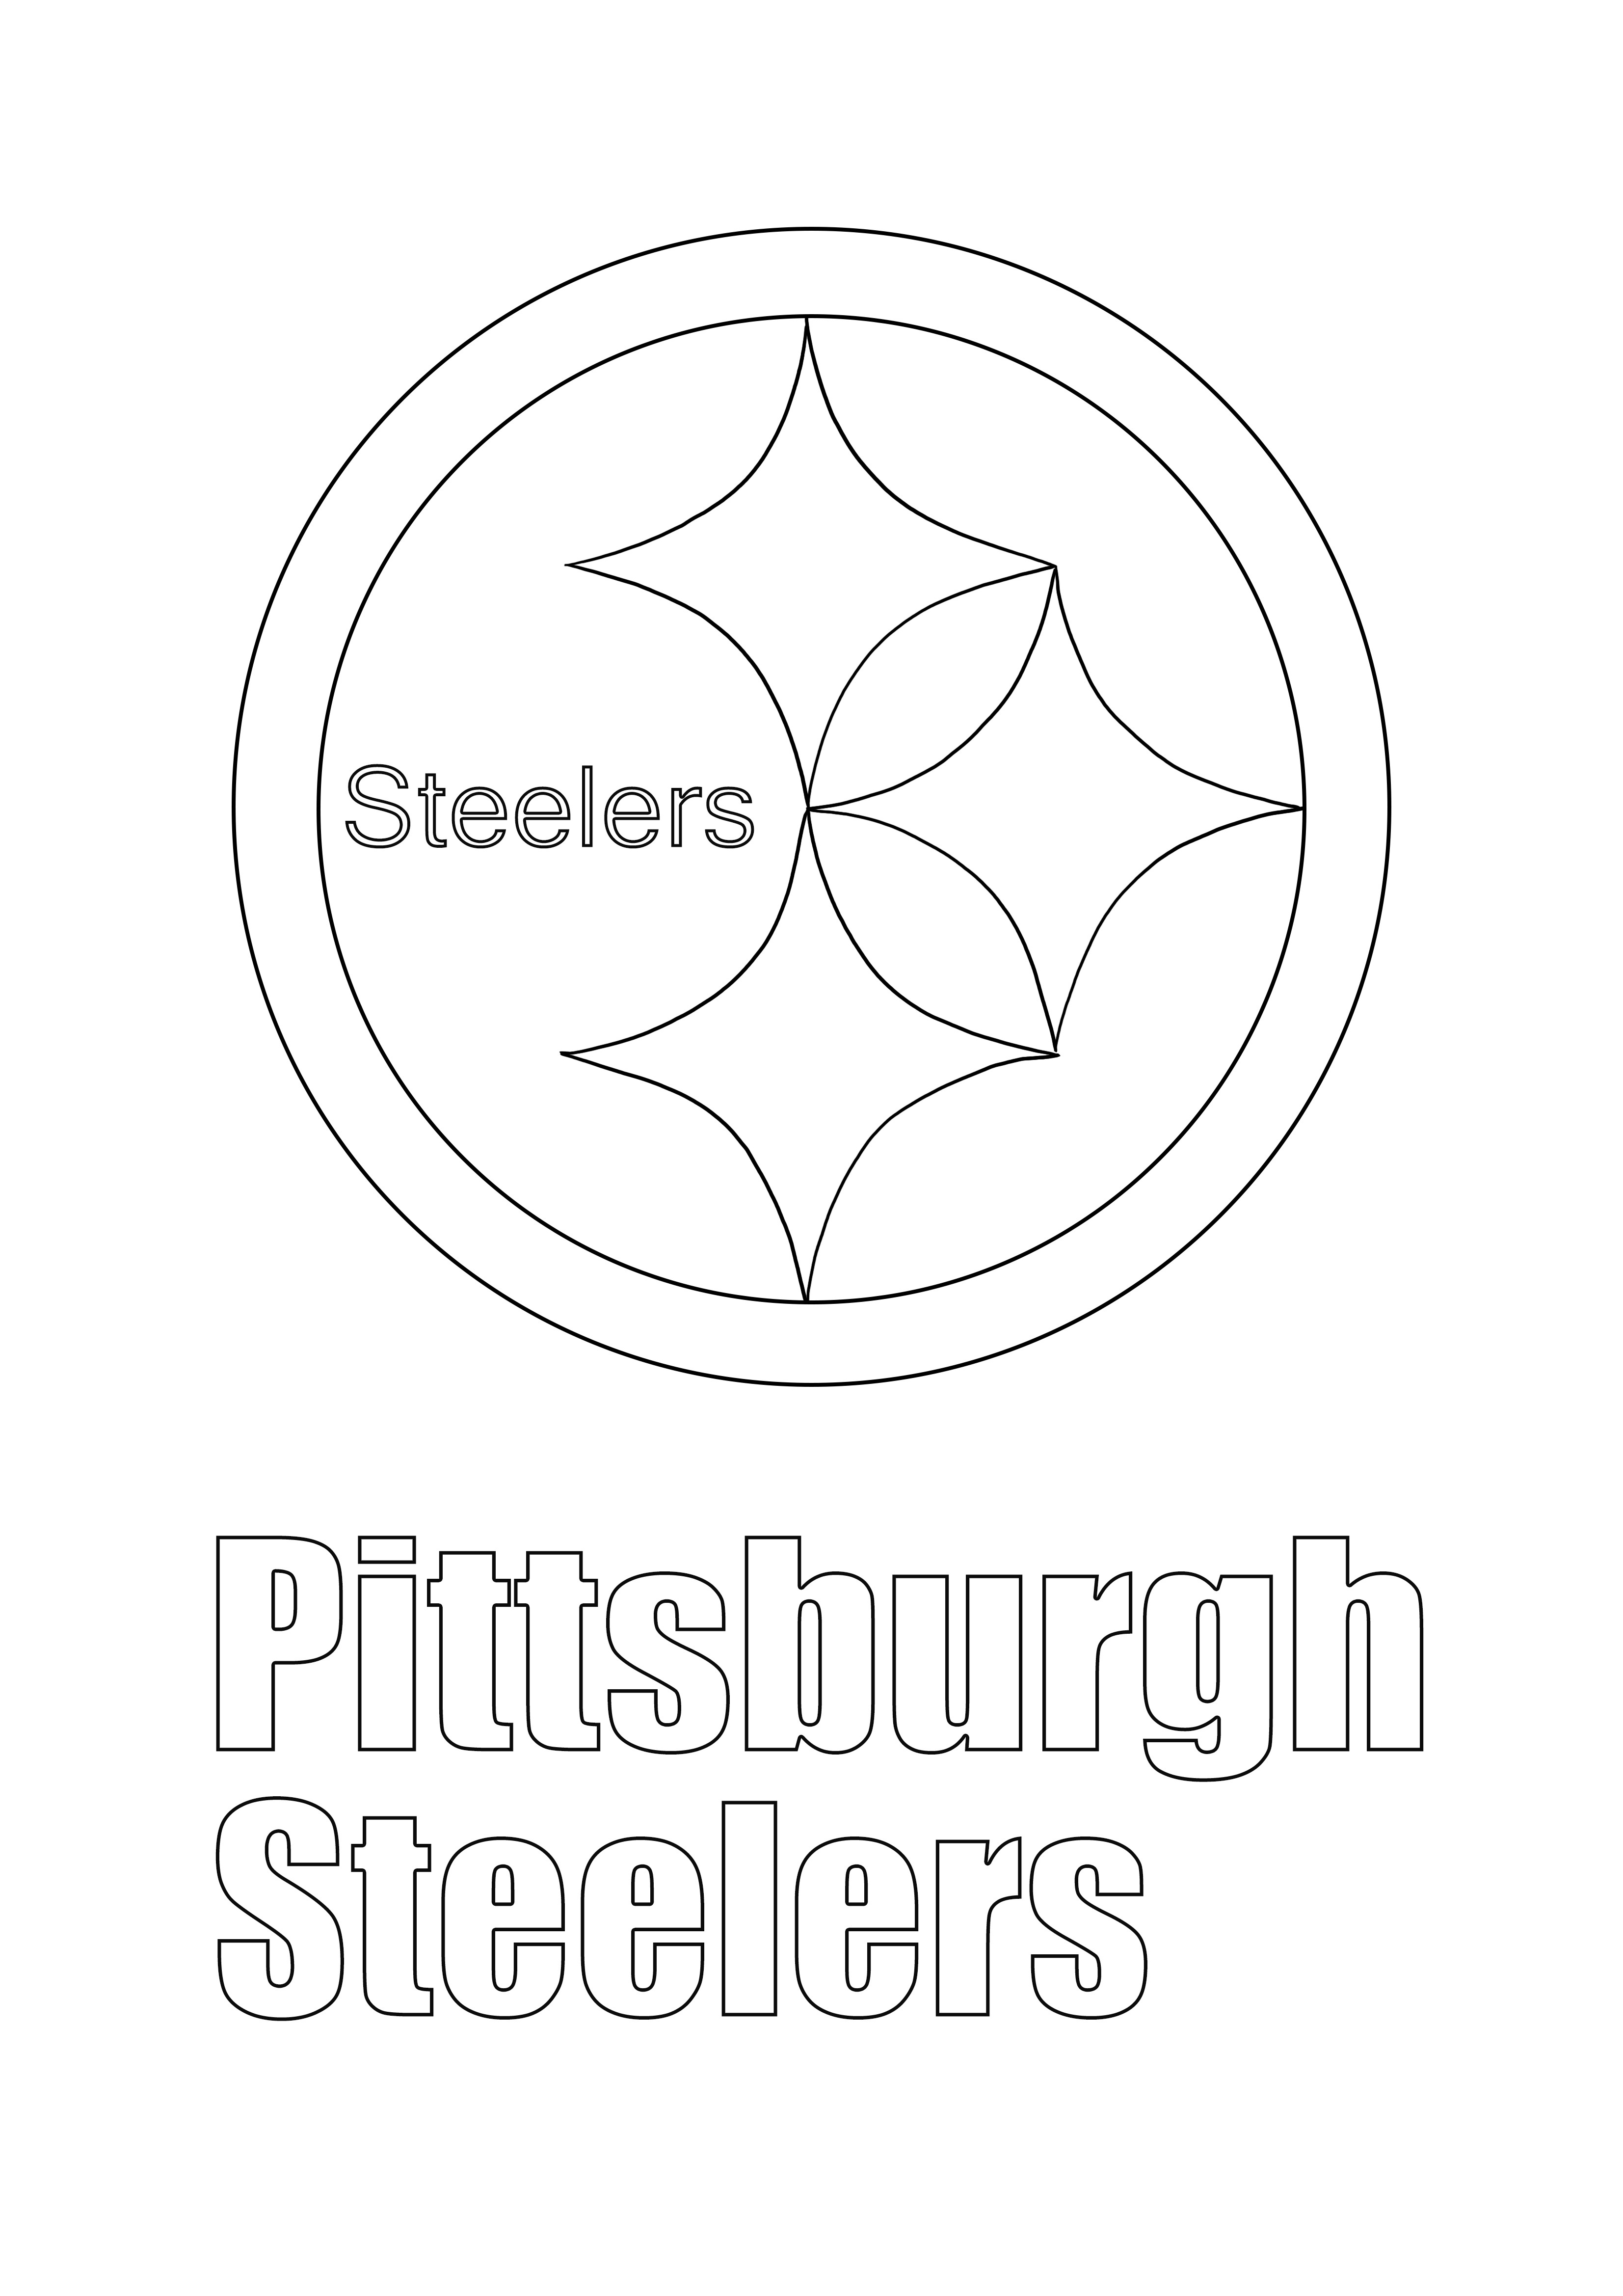 Logo de los Pittsburgh Steelers para colorear fácil gratis para imprimir o guardar para más tarde